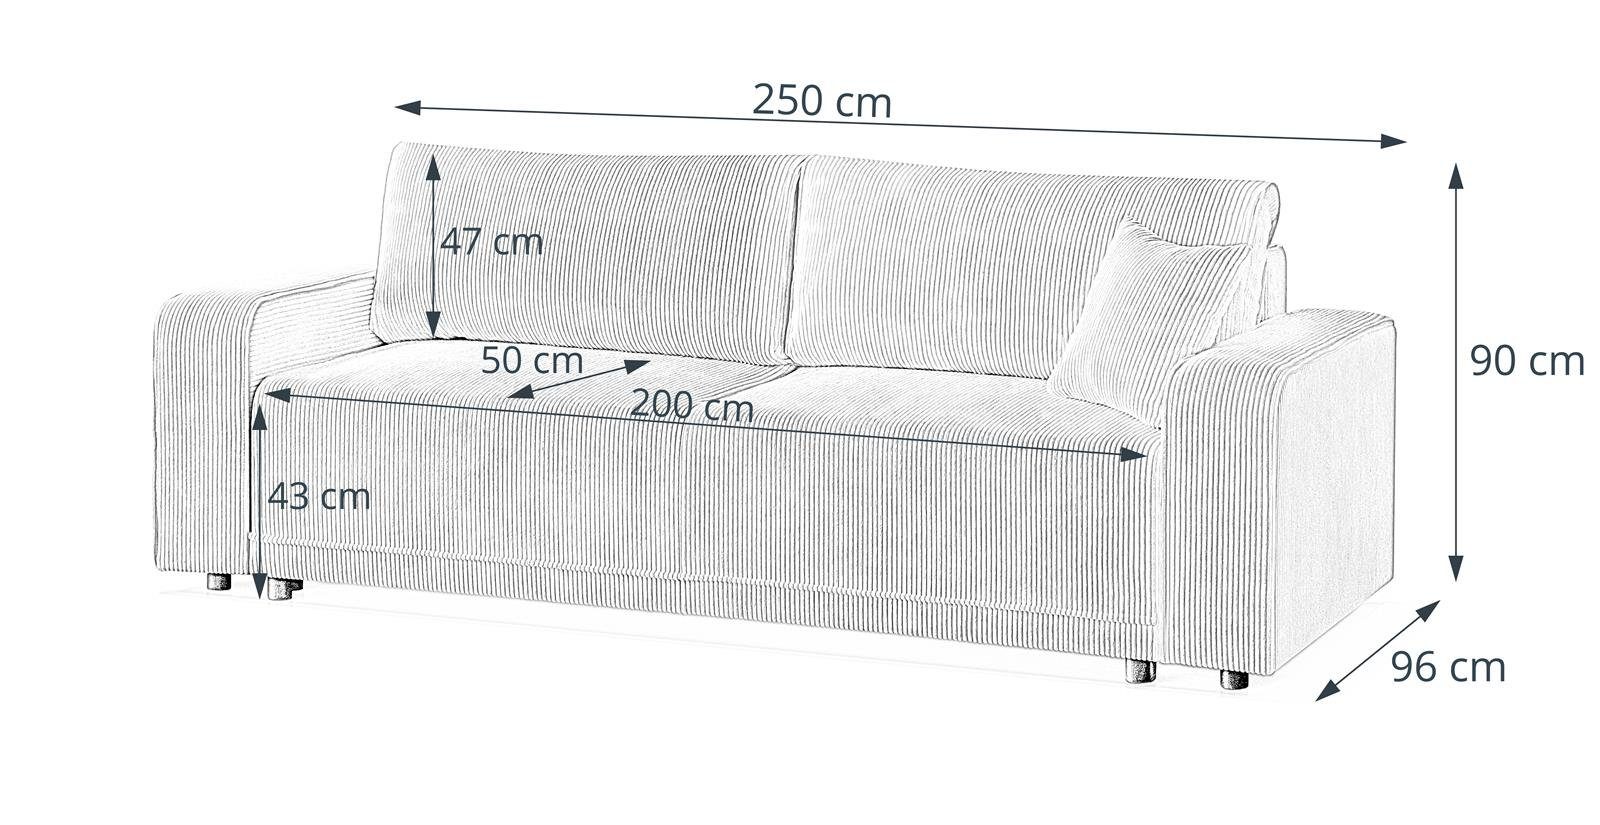 Beautysofa Schlafsofa PRIMO, modernes Design Bettkasten, Schlaffunktion, (poso Wellenfedern, Cappucino breite Armlehnen 02) Sofa